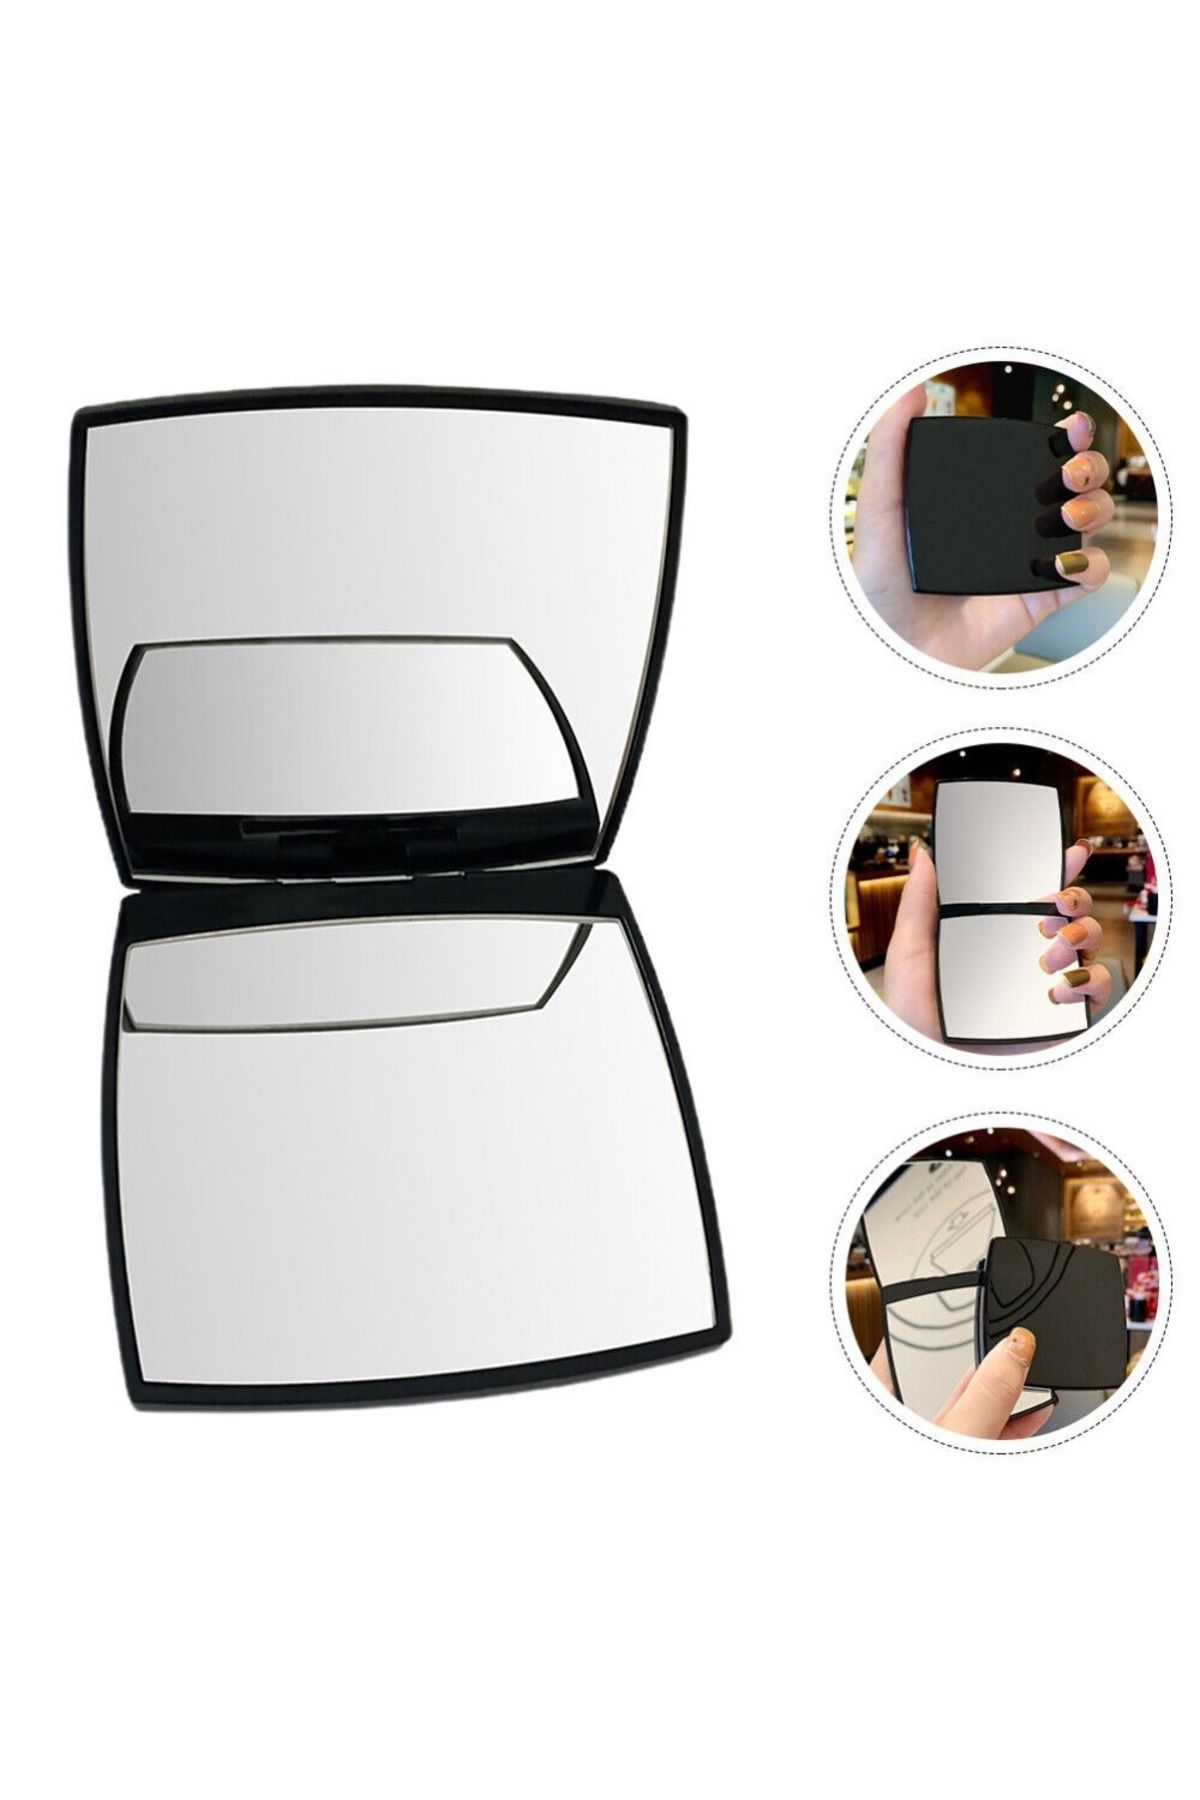 gaman 5x Büyüteç Mini Kare Kompakt Ayna, Katlanır Cep Makyaj Aynası, Küçük Siyah Çanta Boyu Ayna